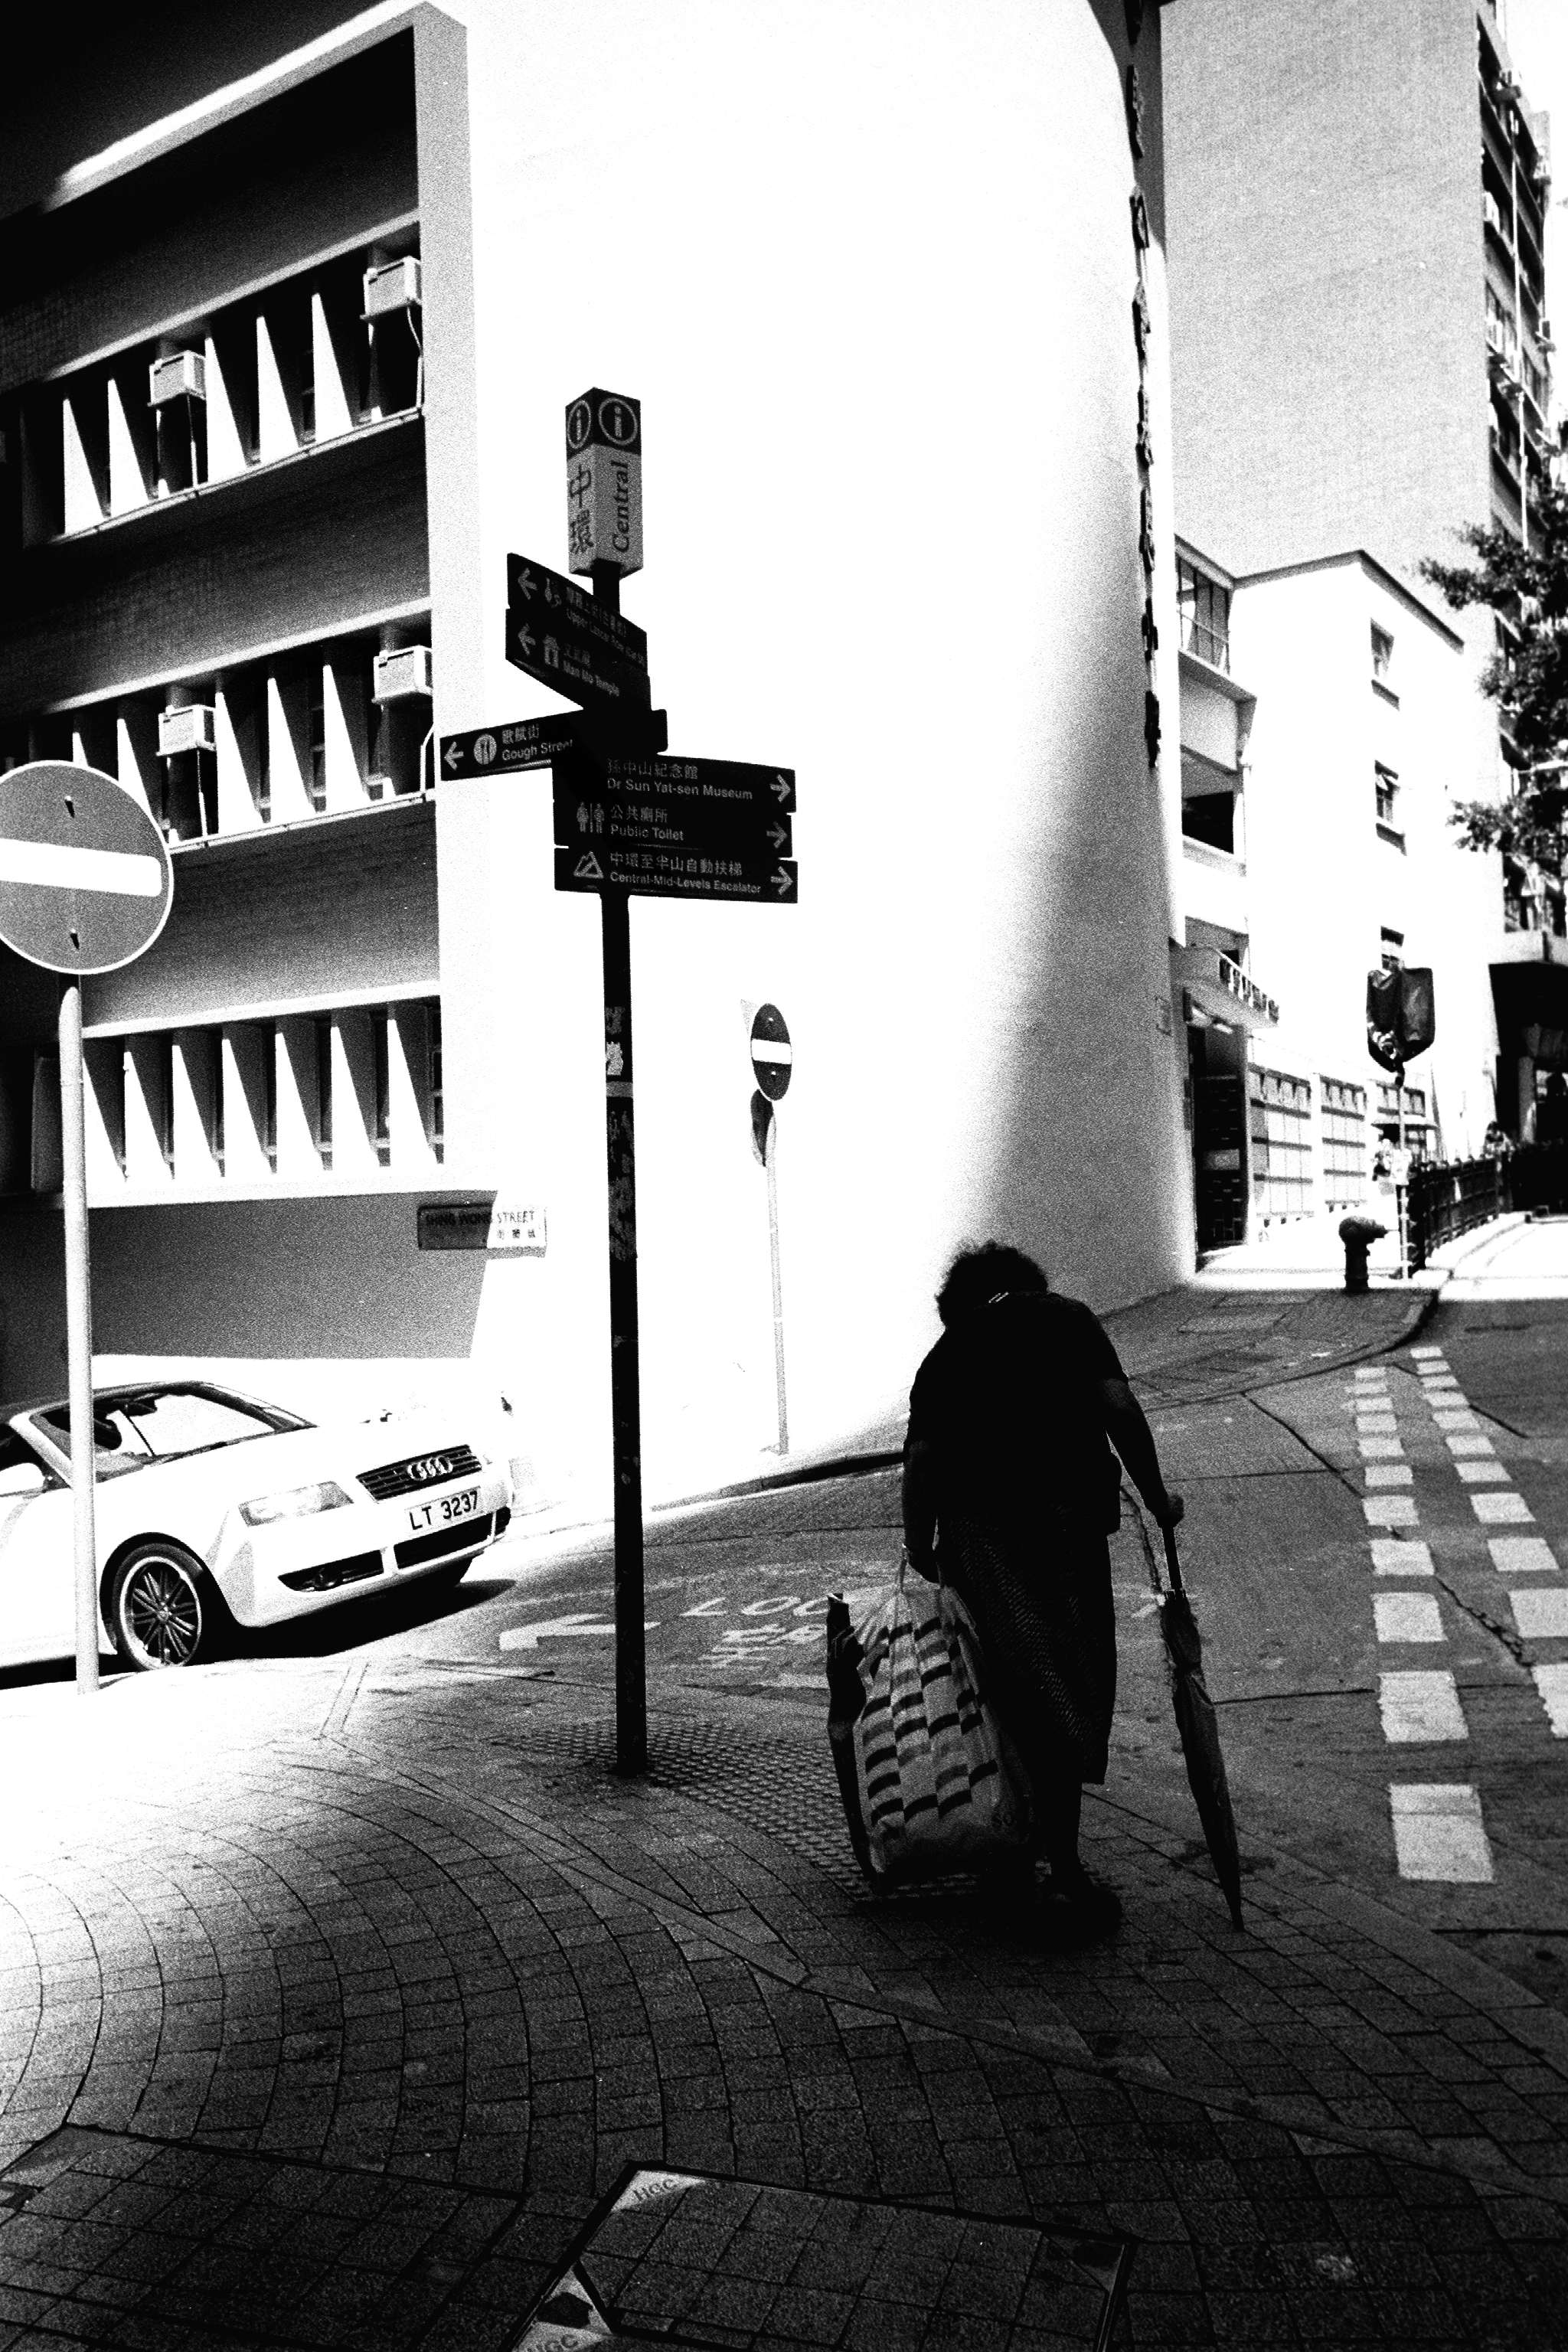 Elder at street